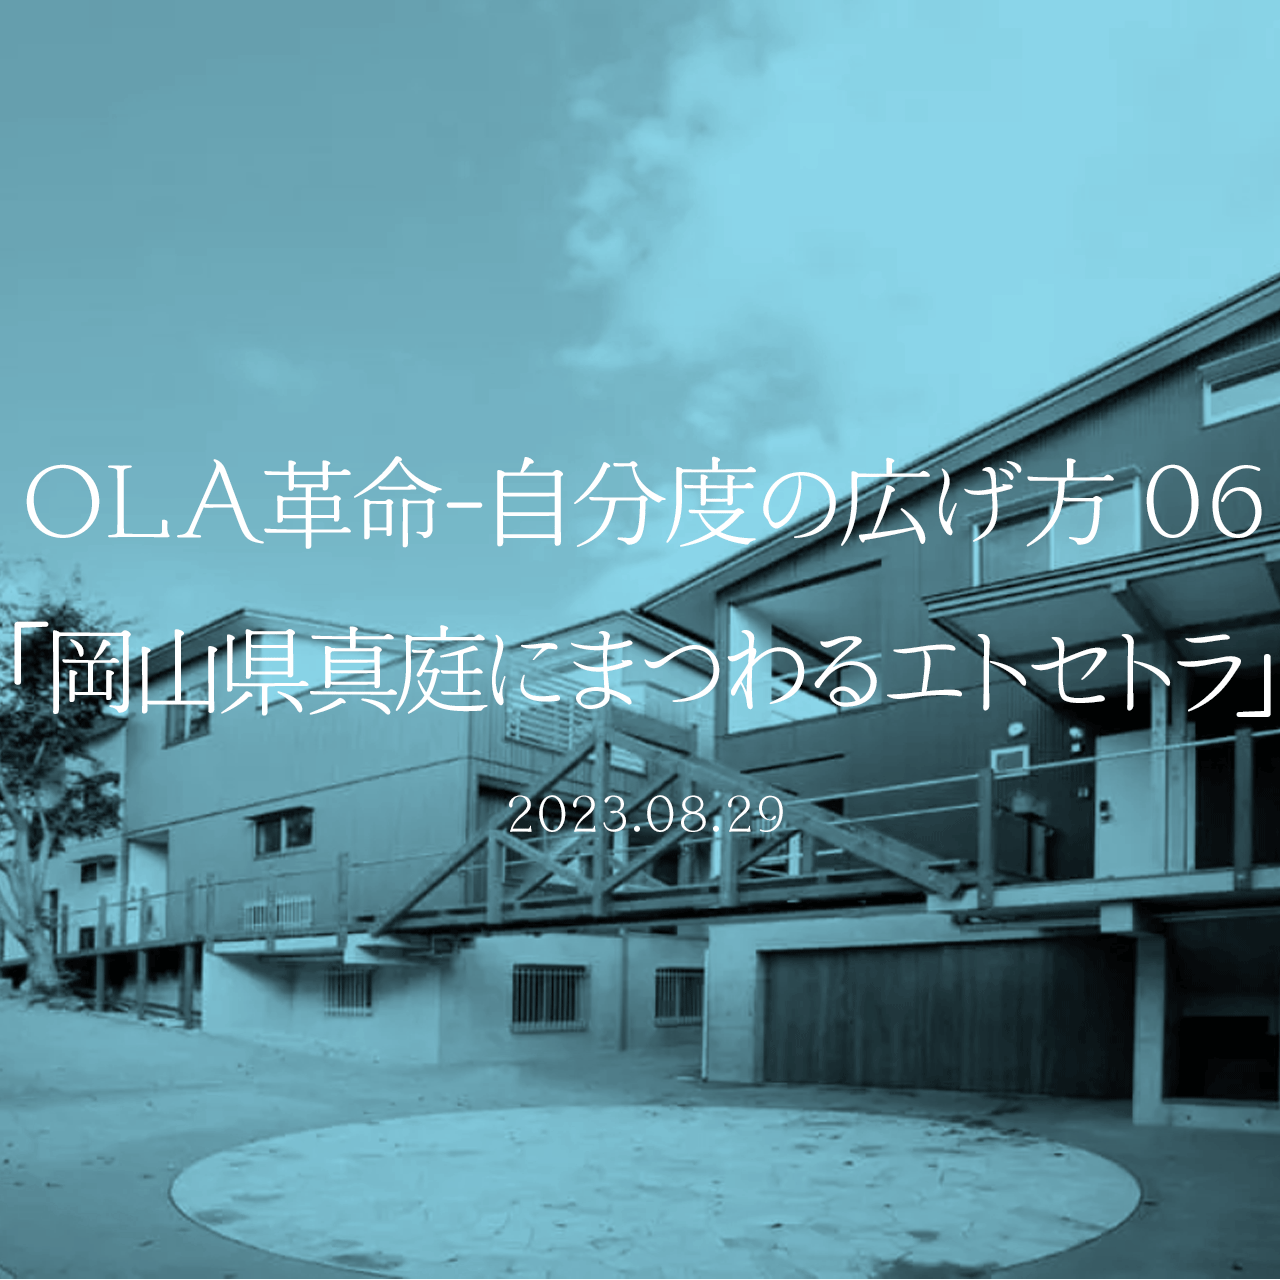 OLA革命-自分度の広げ方 06「岡山県真庭にまつわるエトセトラ」